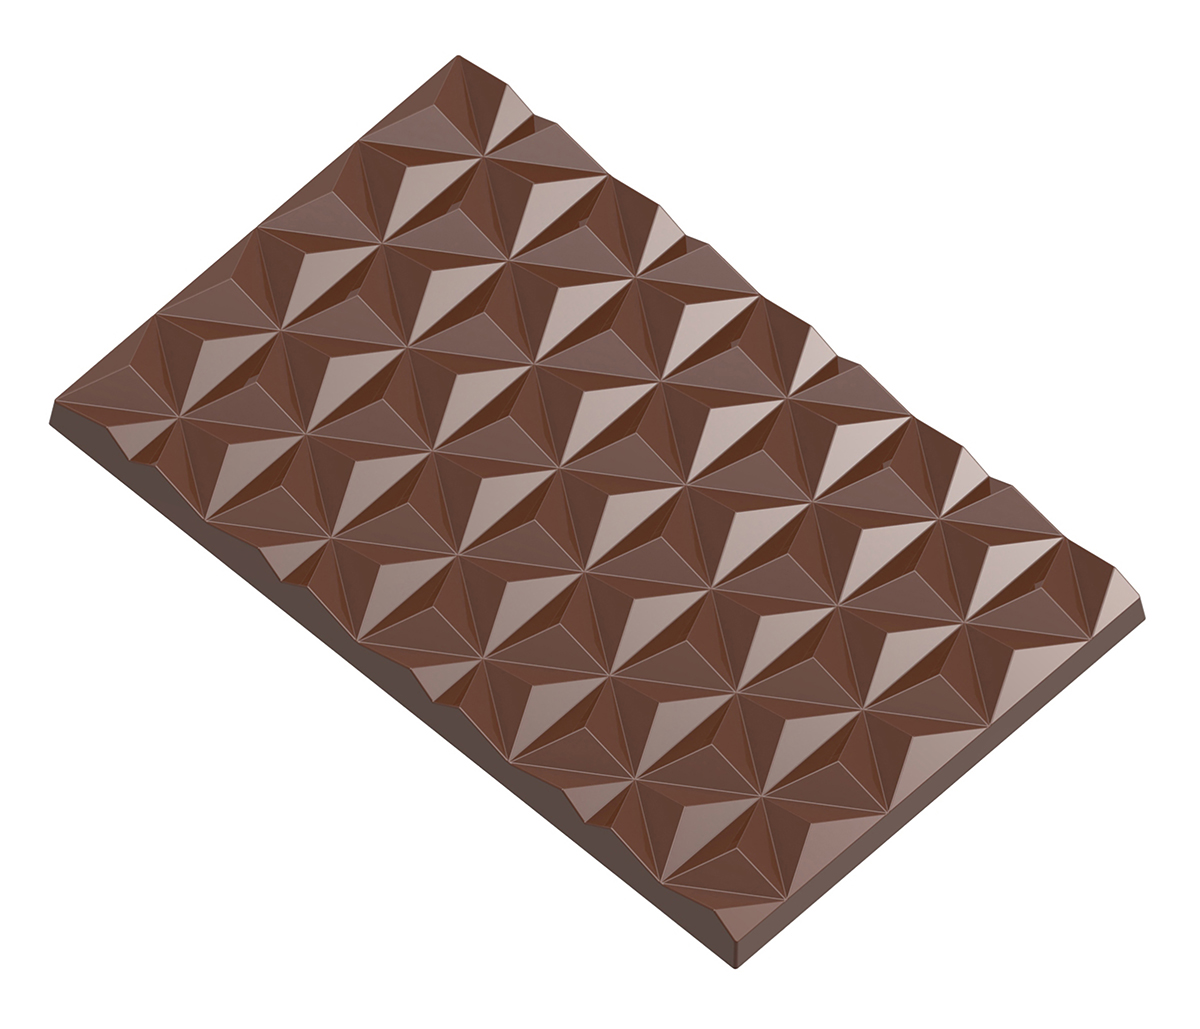 Se Professionel chokoladeform i polycarbonat - Tablet with star pattern CW12006 hos BageTid.dk